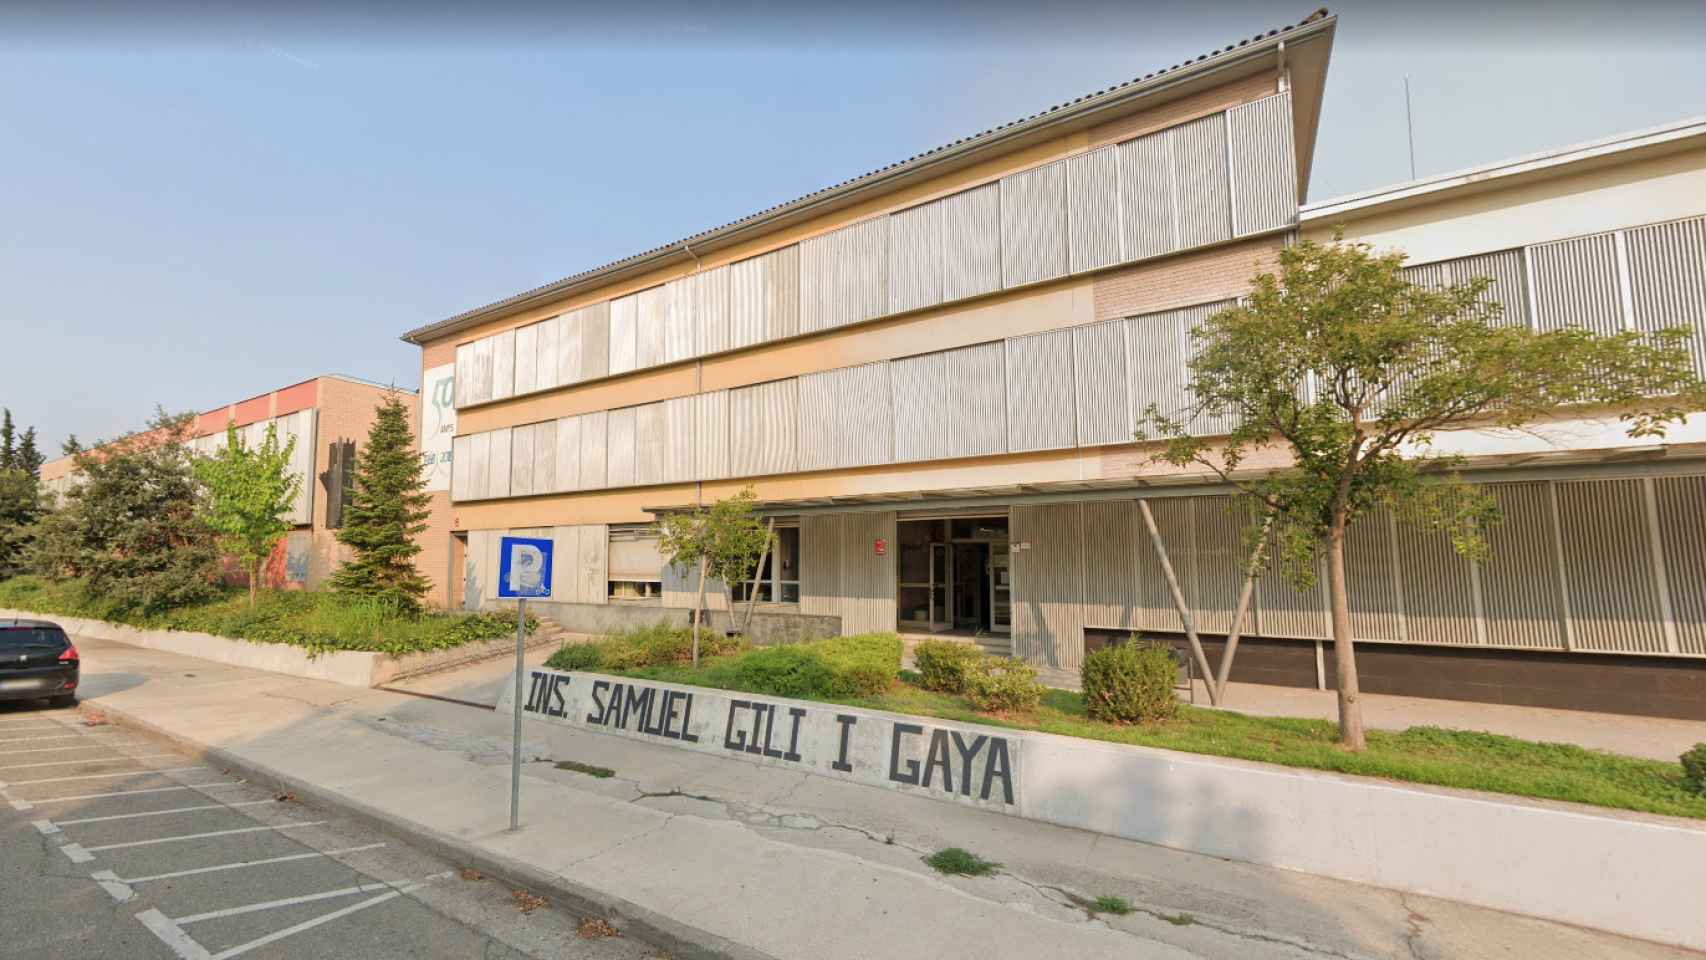 Instituto Gili y Gaya de Lleida